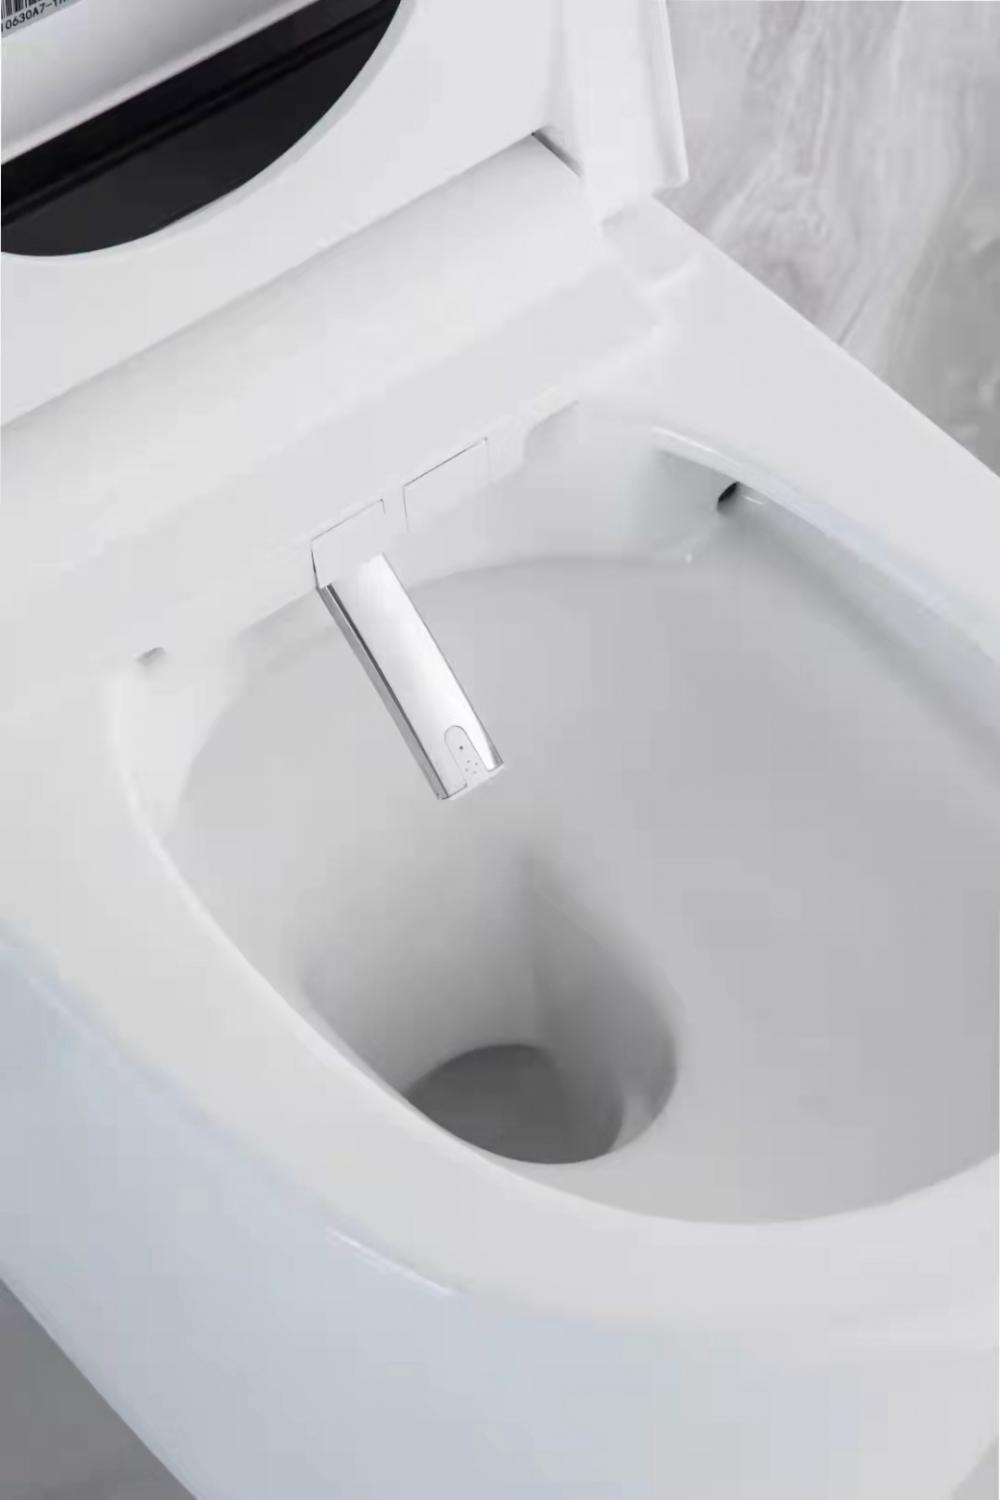 Smart Toilet Hp203308